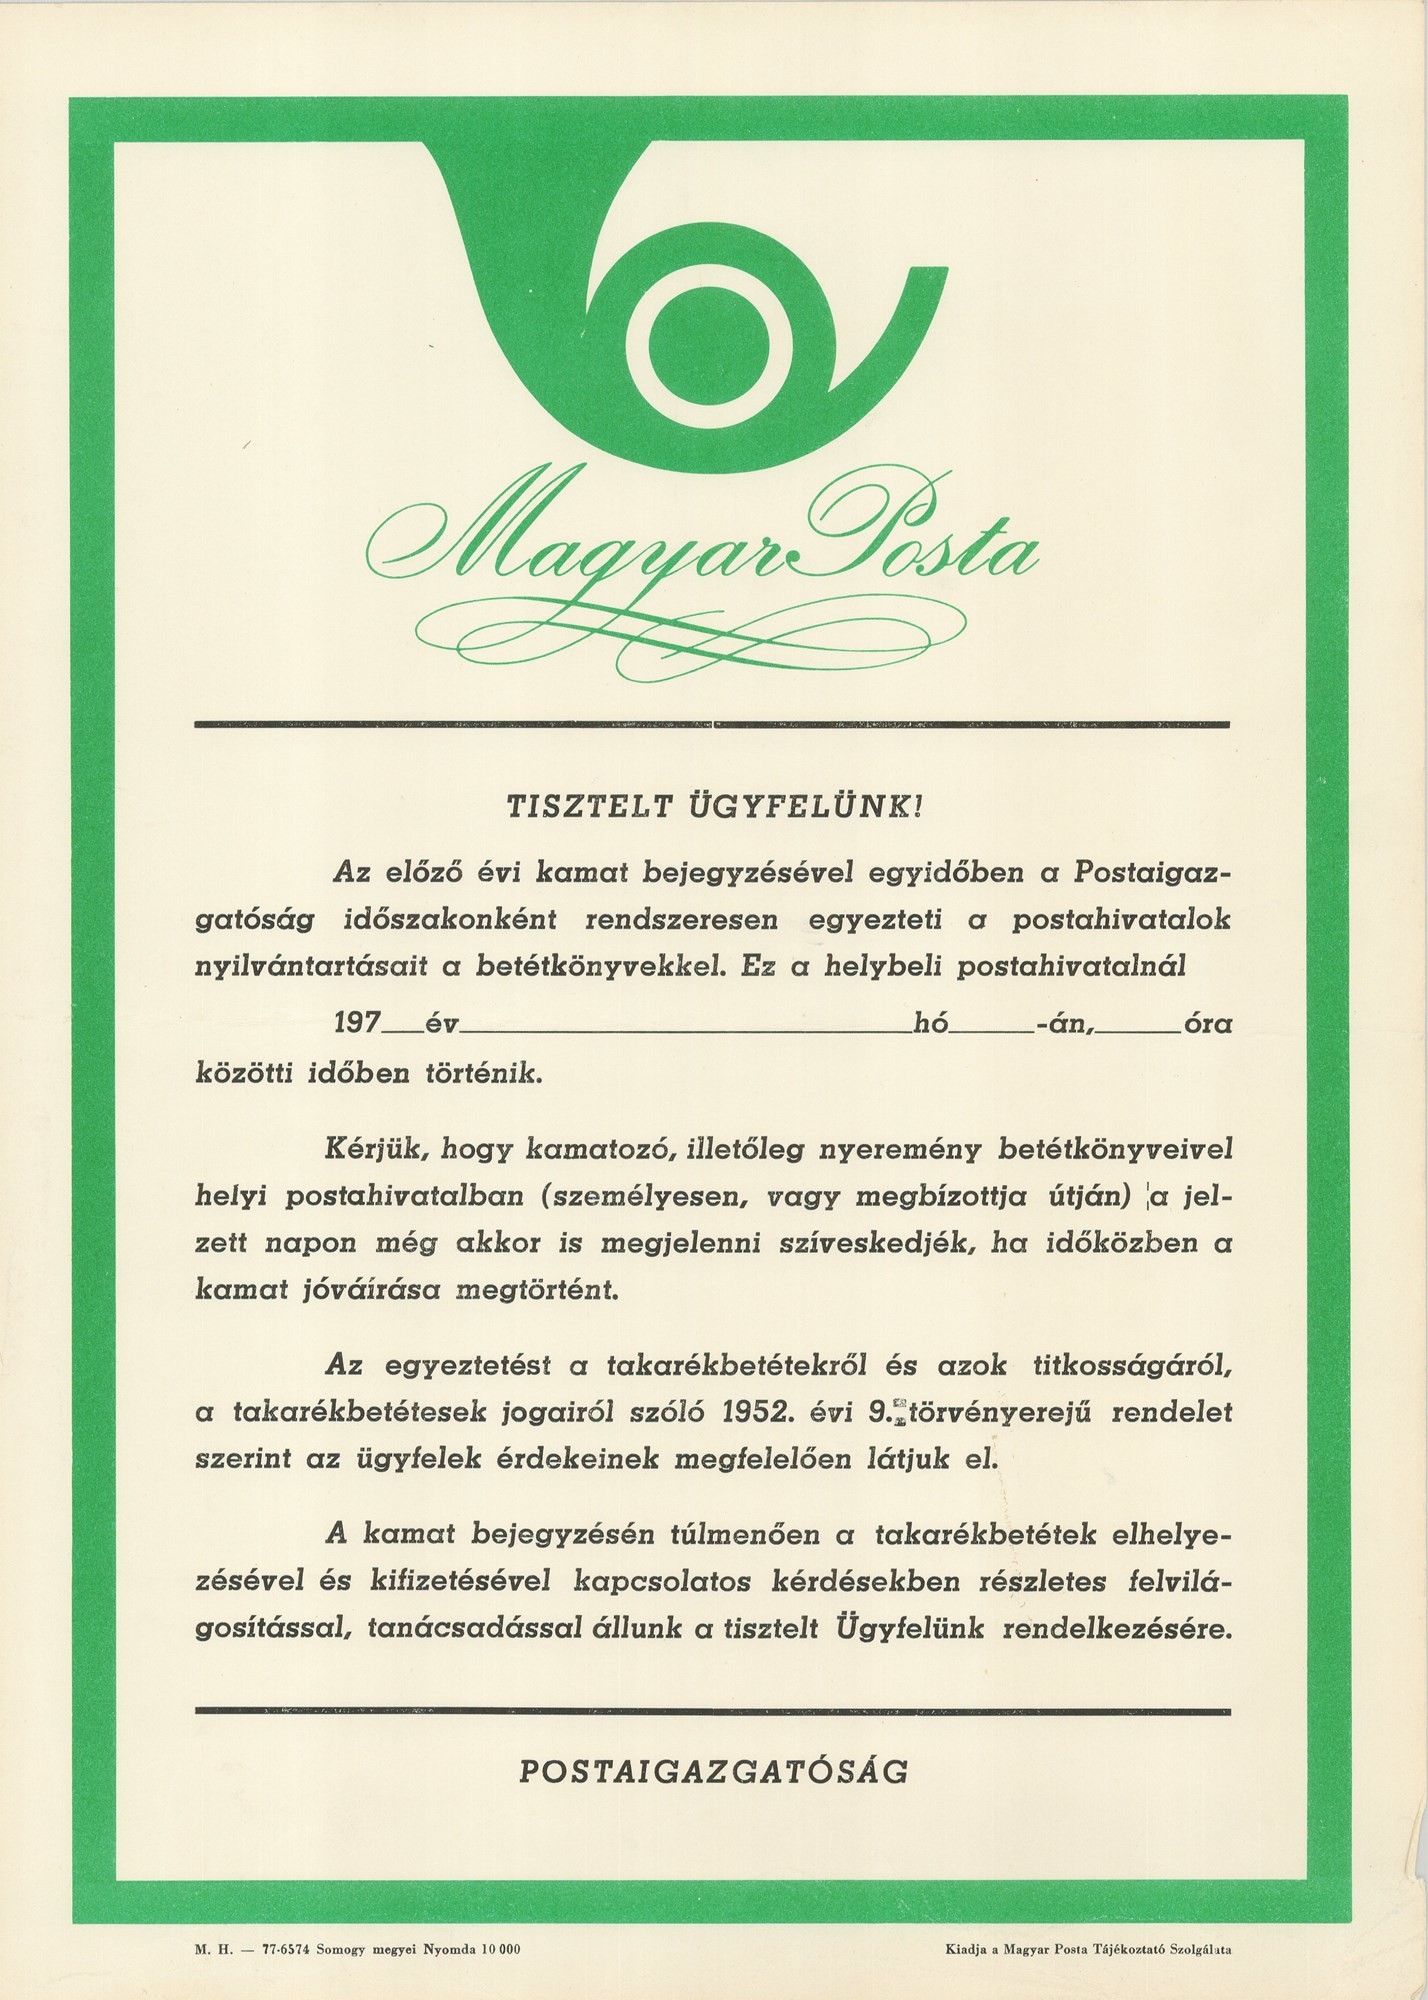 Plakát - Magyar Posta ügyféltájékoztatás, 1977 (Postamúzeum CC BY-NC-SA)